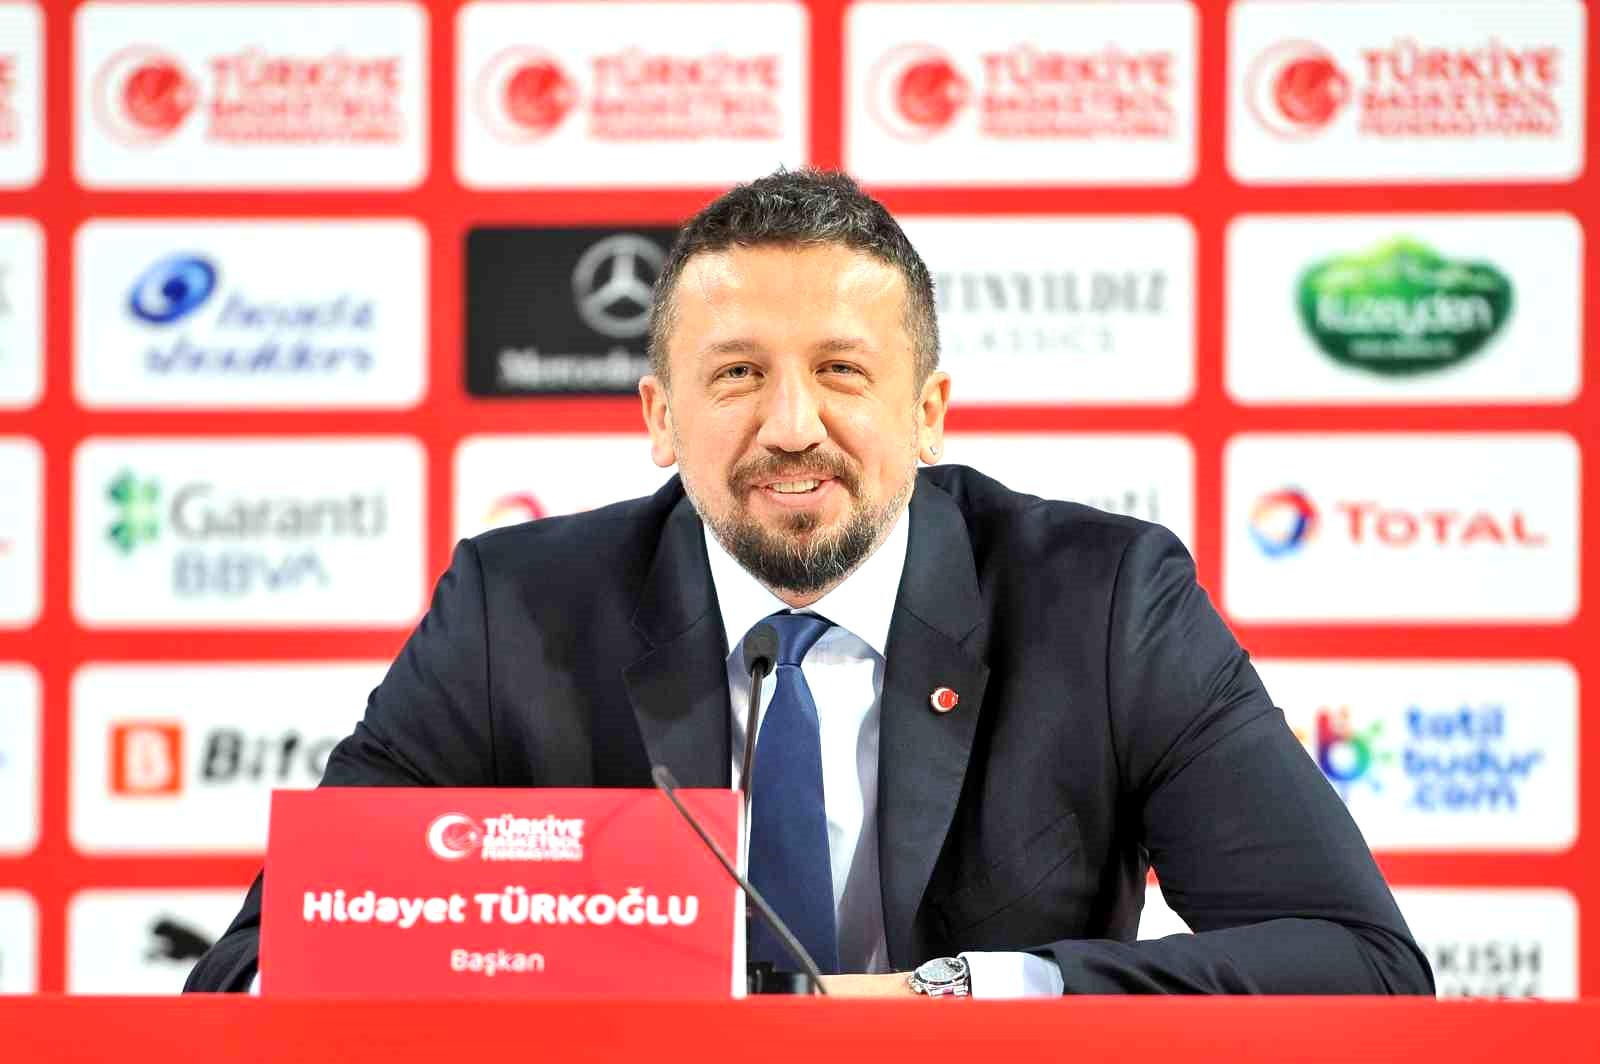 TBF Başkanı Hidayet Türkoğlu: “2024, Türk basketbolu için çok önemli bir yıl olmaya aday”